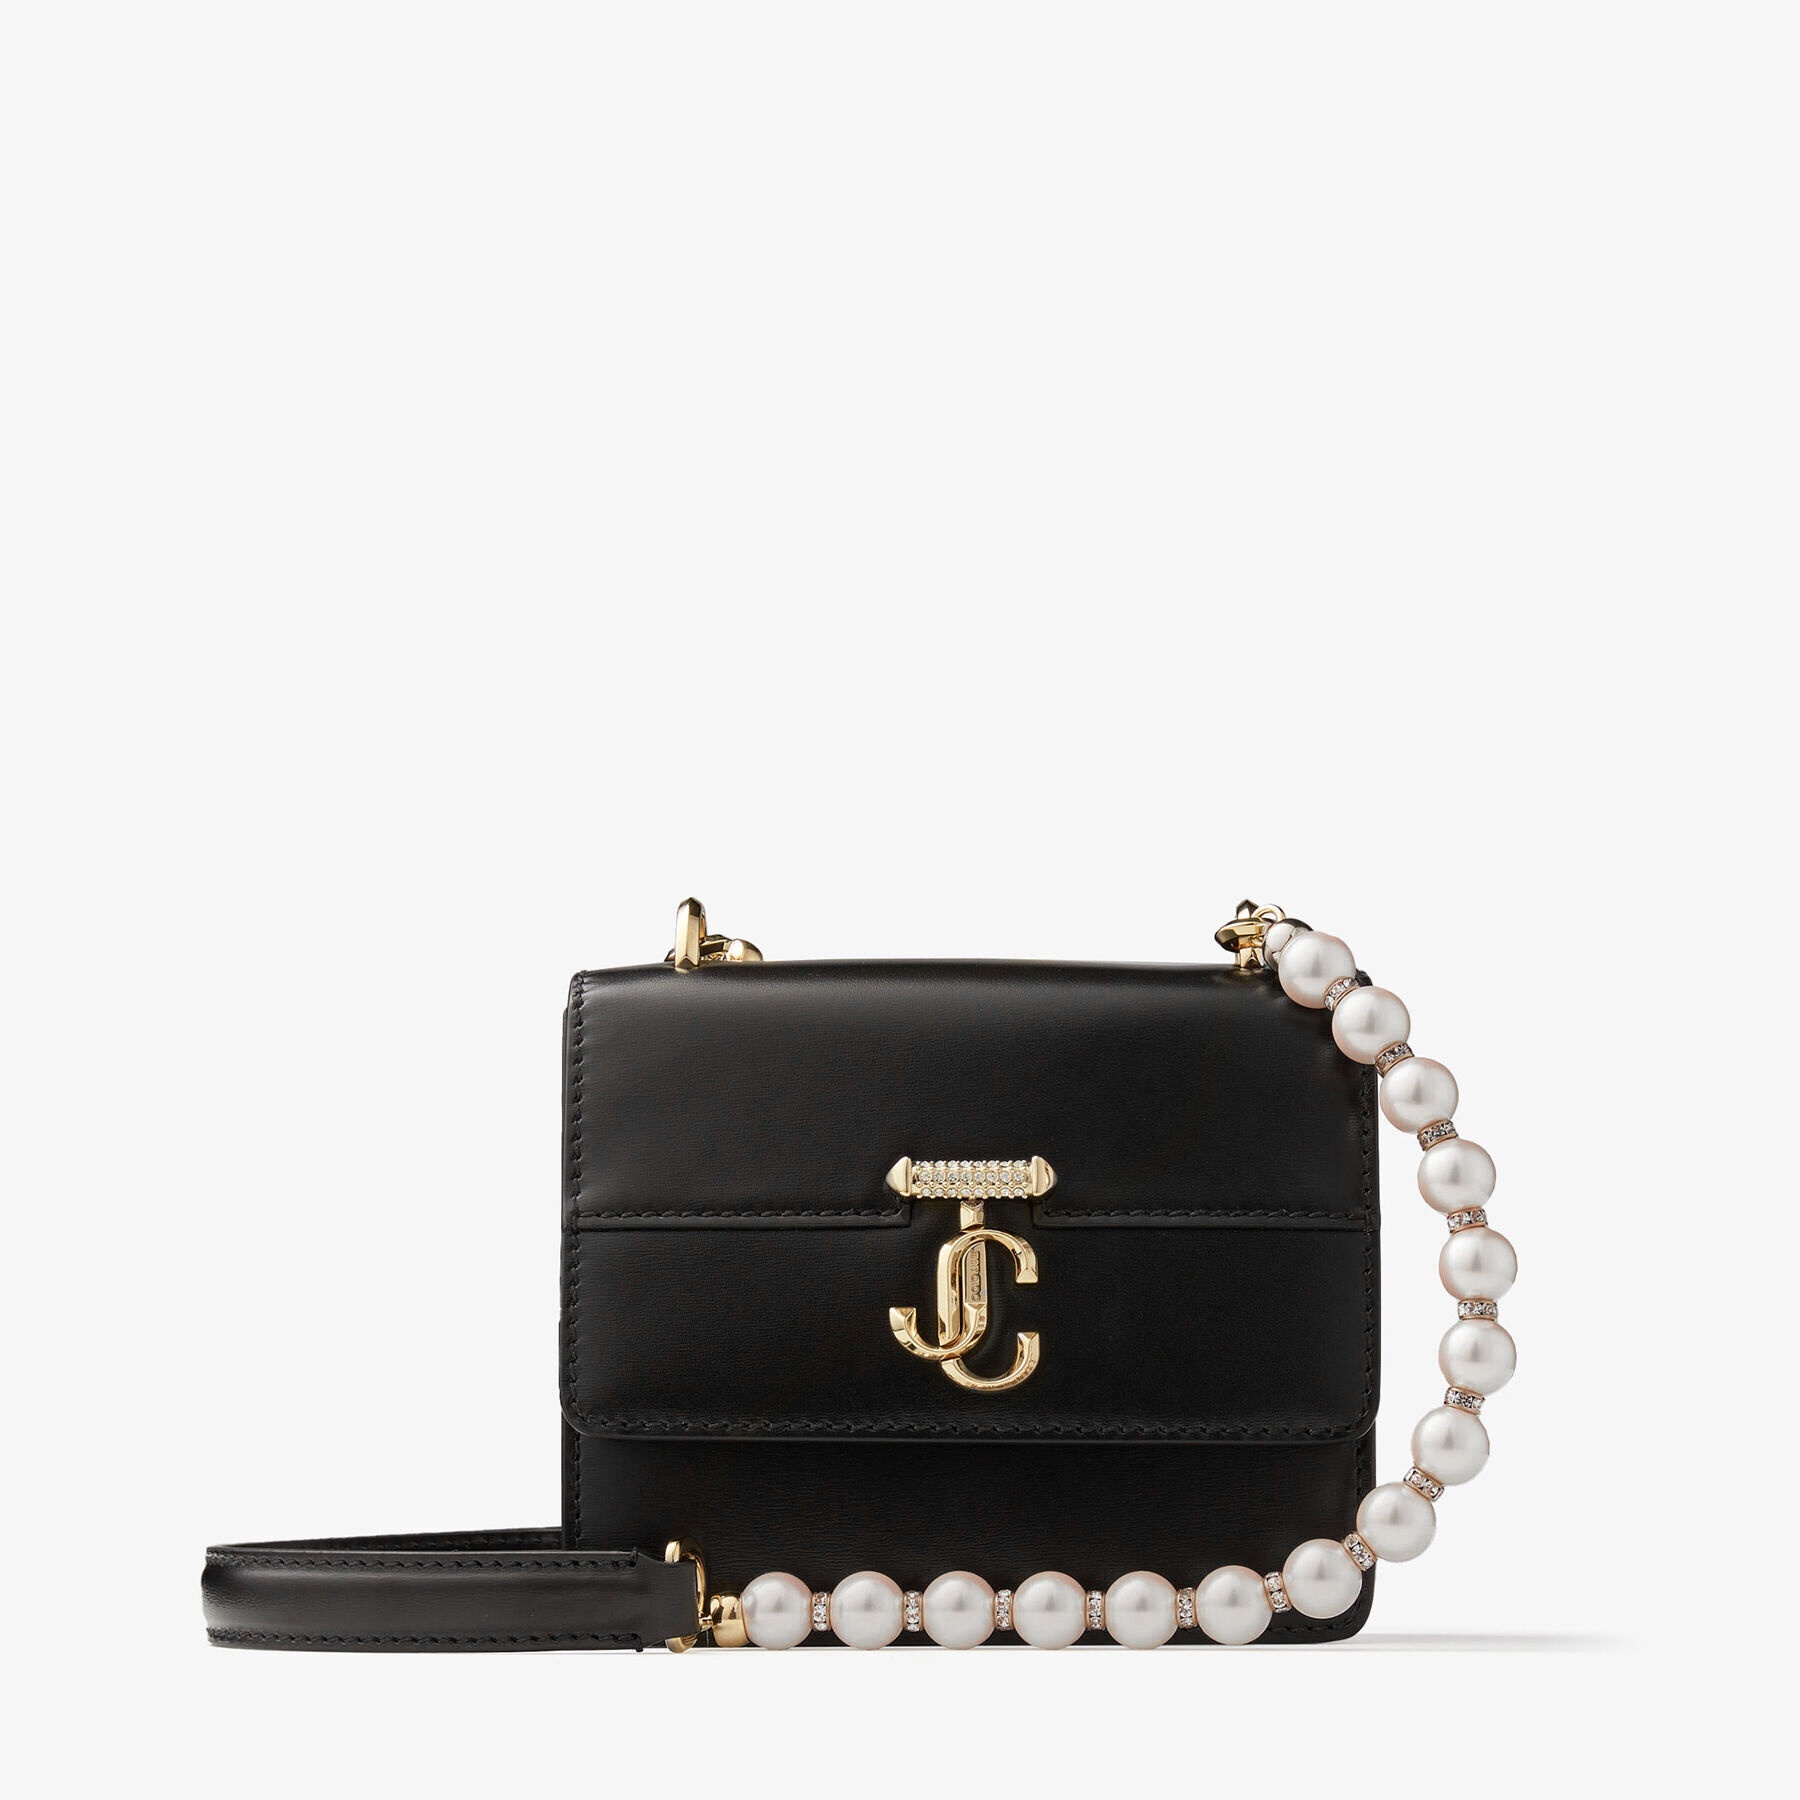 JIMMY CHOO Varenne Quad XS Black Leather Shoulder Bag with Pearl Strap